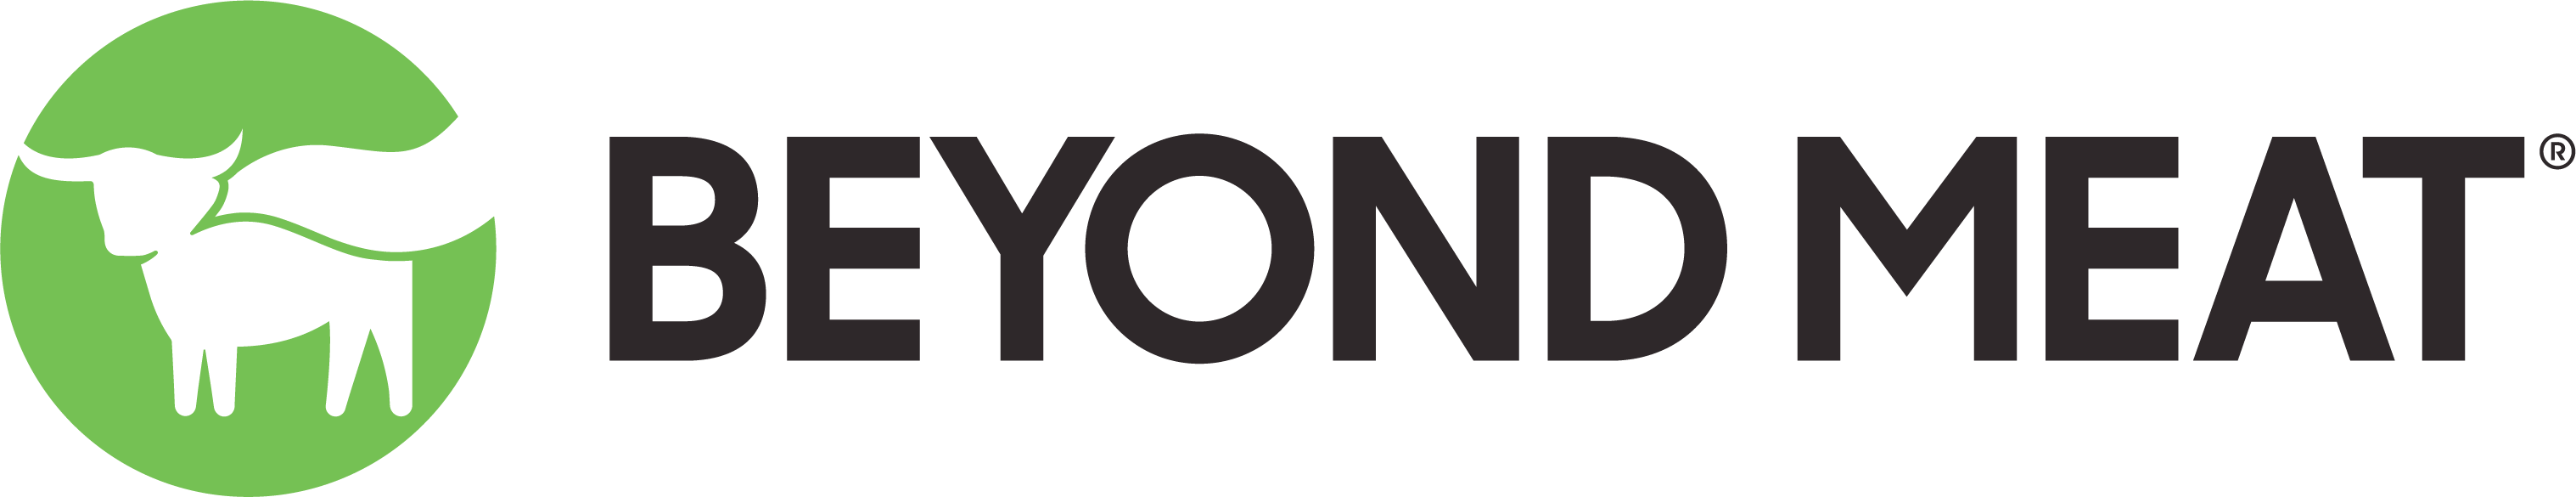 Beyond Meat Logo Image